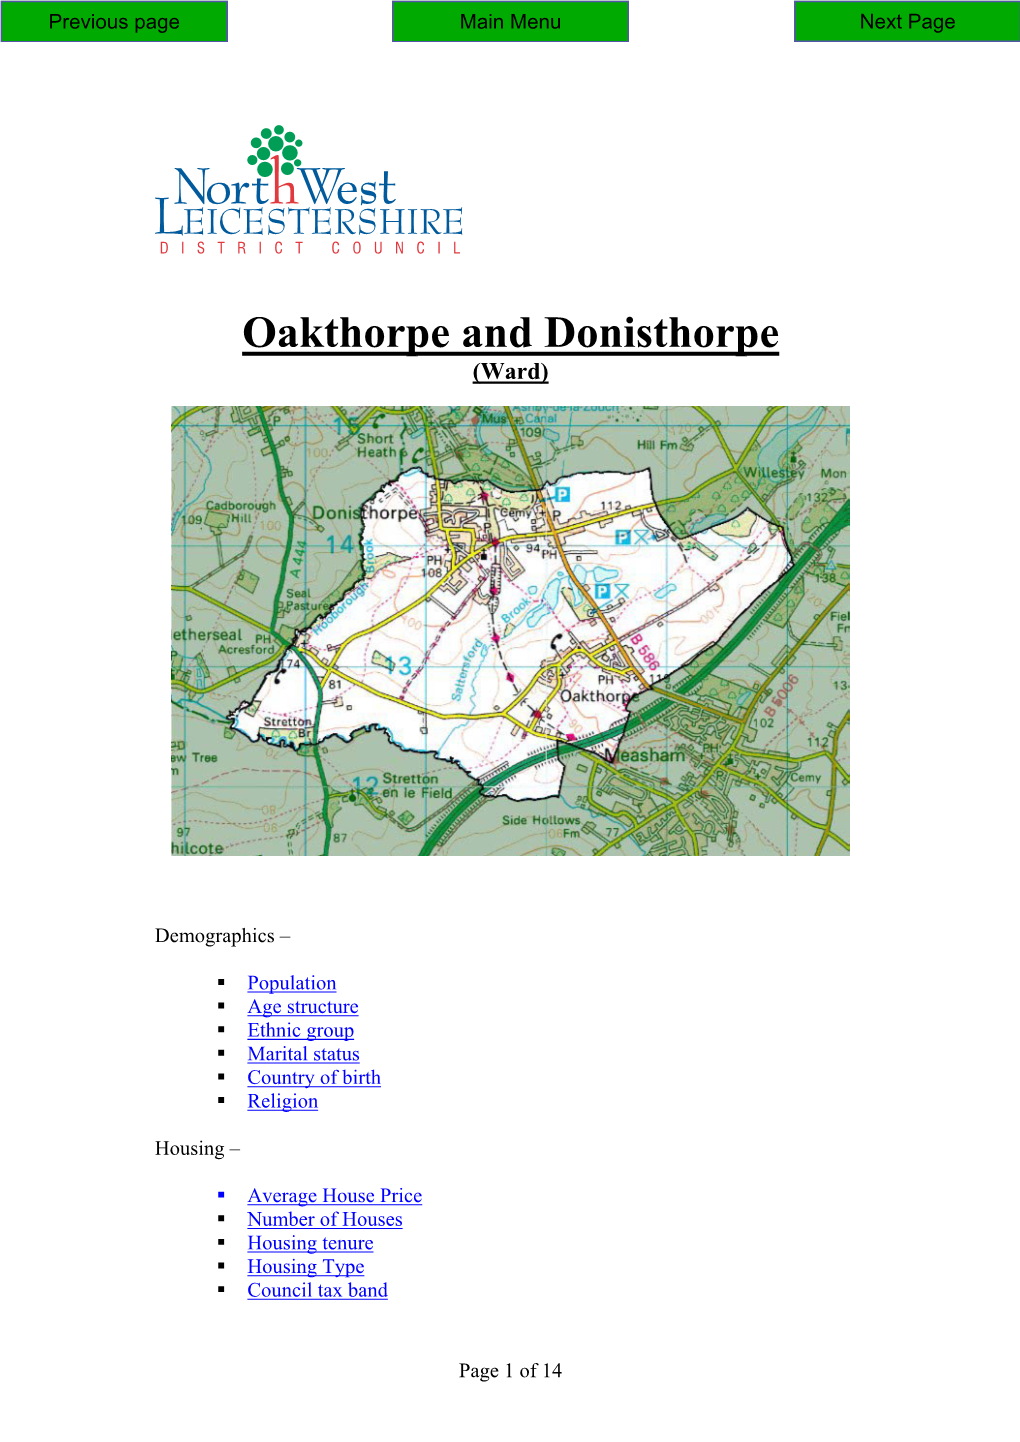 Oakthorpe and Donisthorpe (Ward)